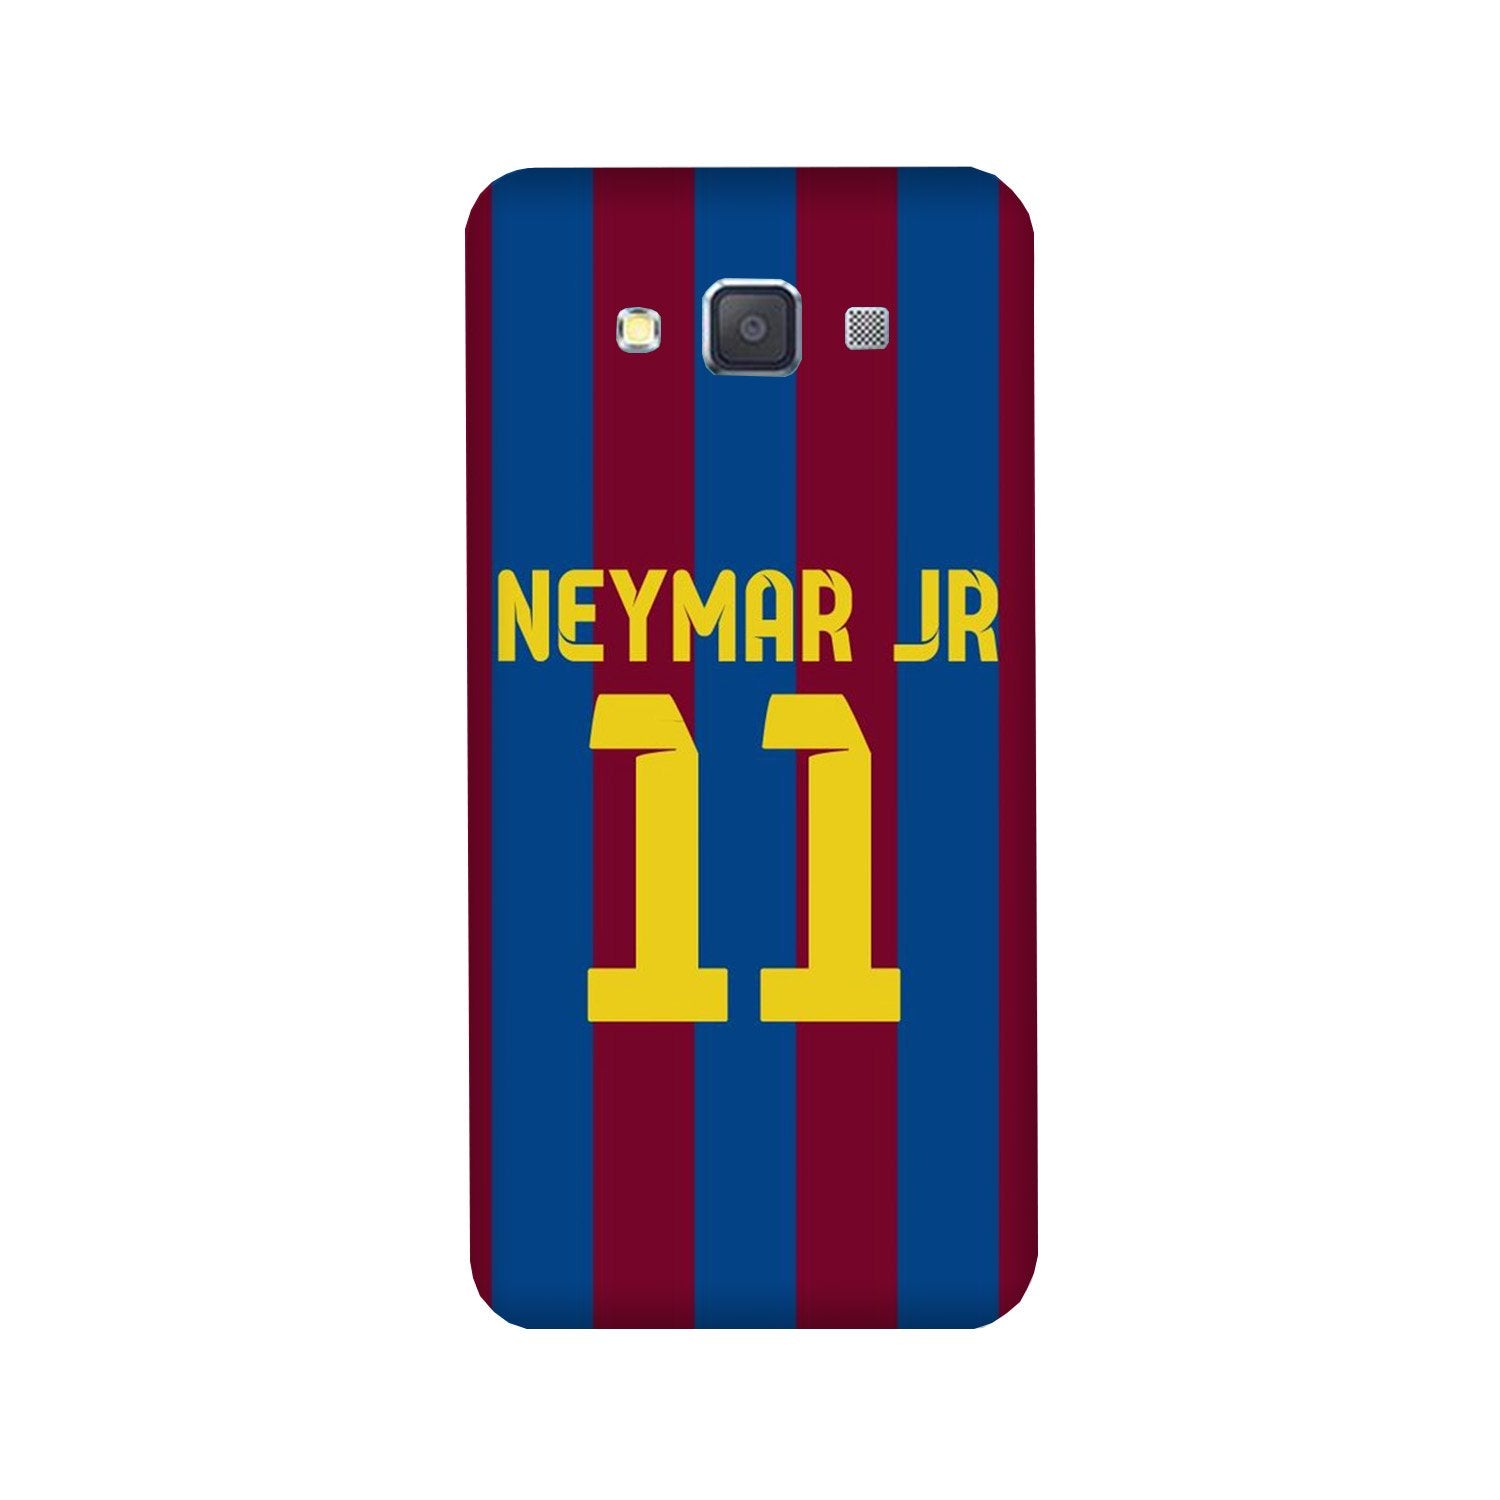 Neymar Jr Case for Galaxy Grand Max(Design - 162)